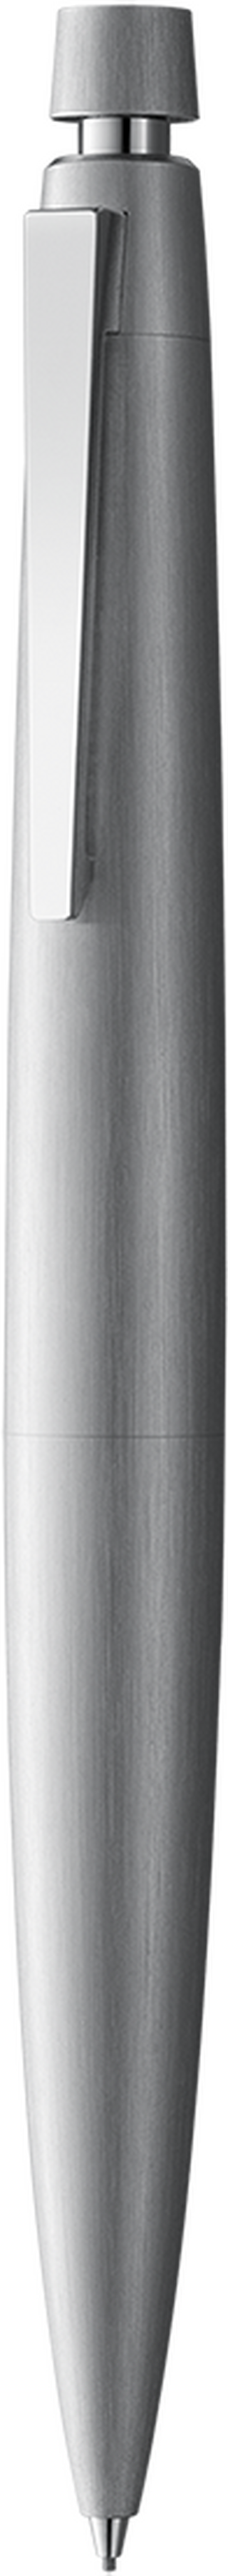 Druckbleistift LAMY 2000 silver HB 0,7 mm